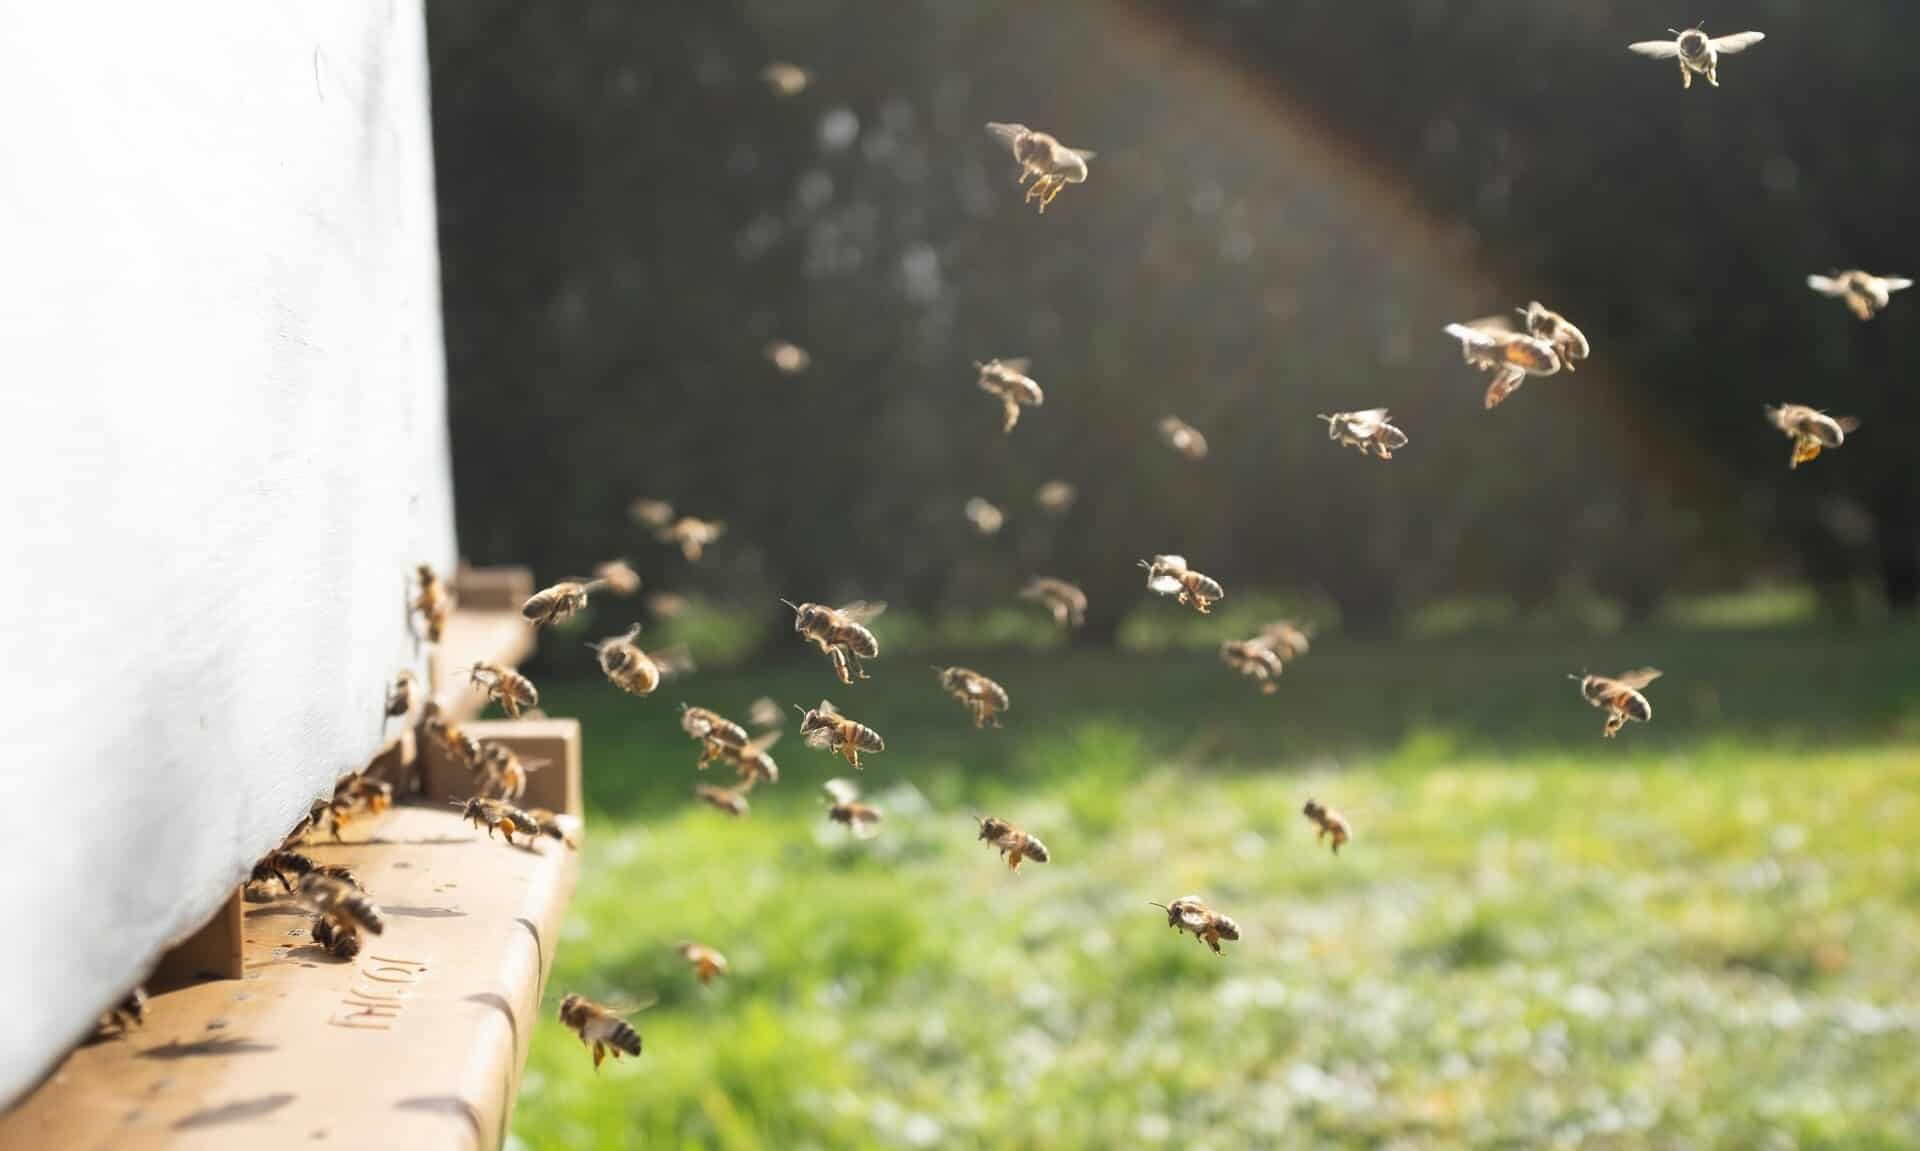 Τι-συμβαίνει-με-τις-μέλισσες;-Μετά-την-επίθεση-στη-Μυτιλήνη-γέμισε-και-η-Κομοτηνή